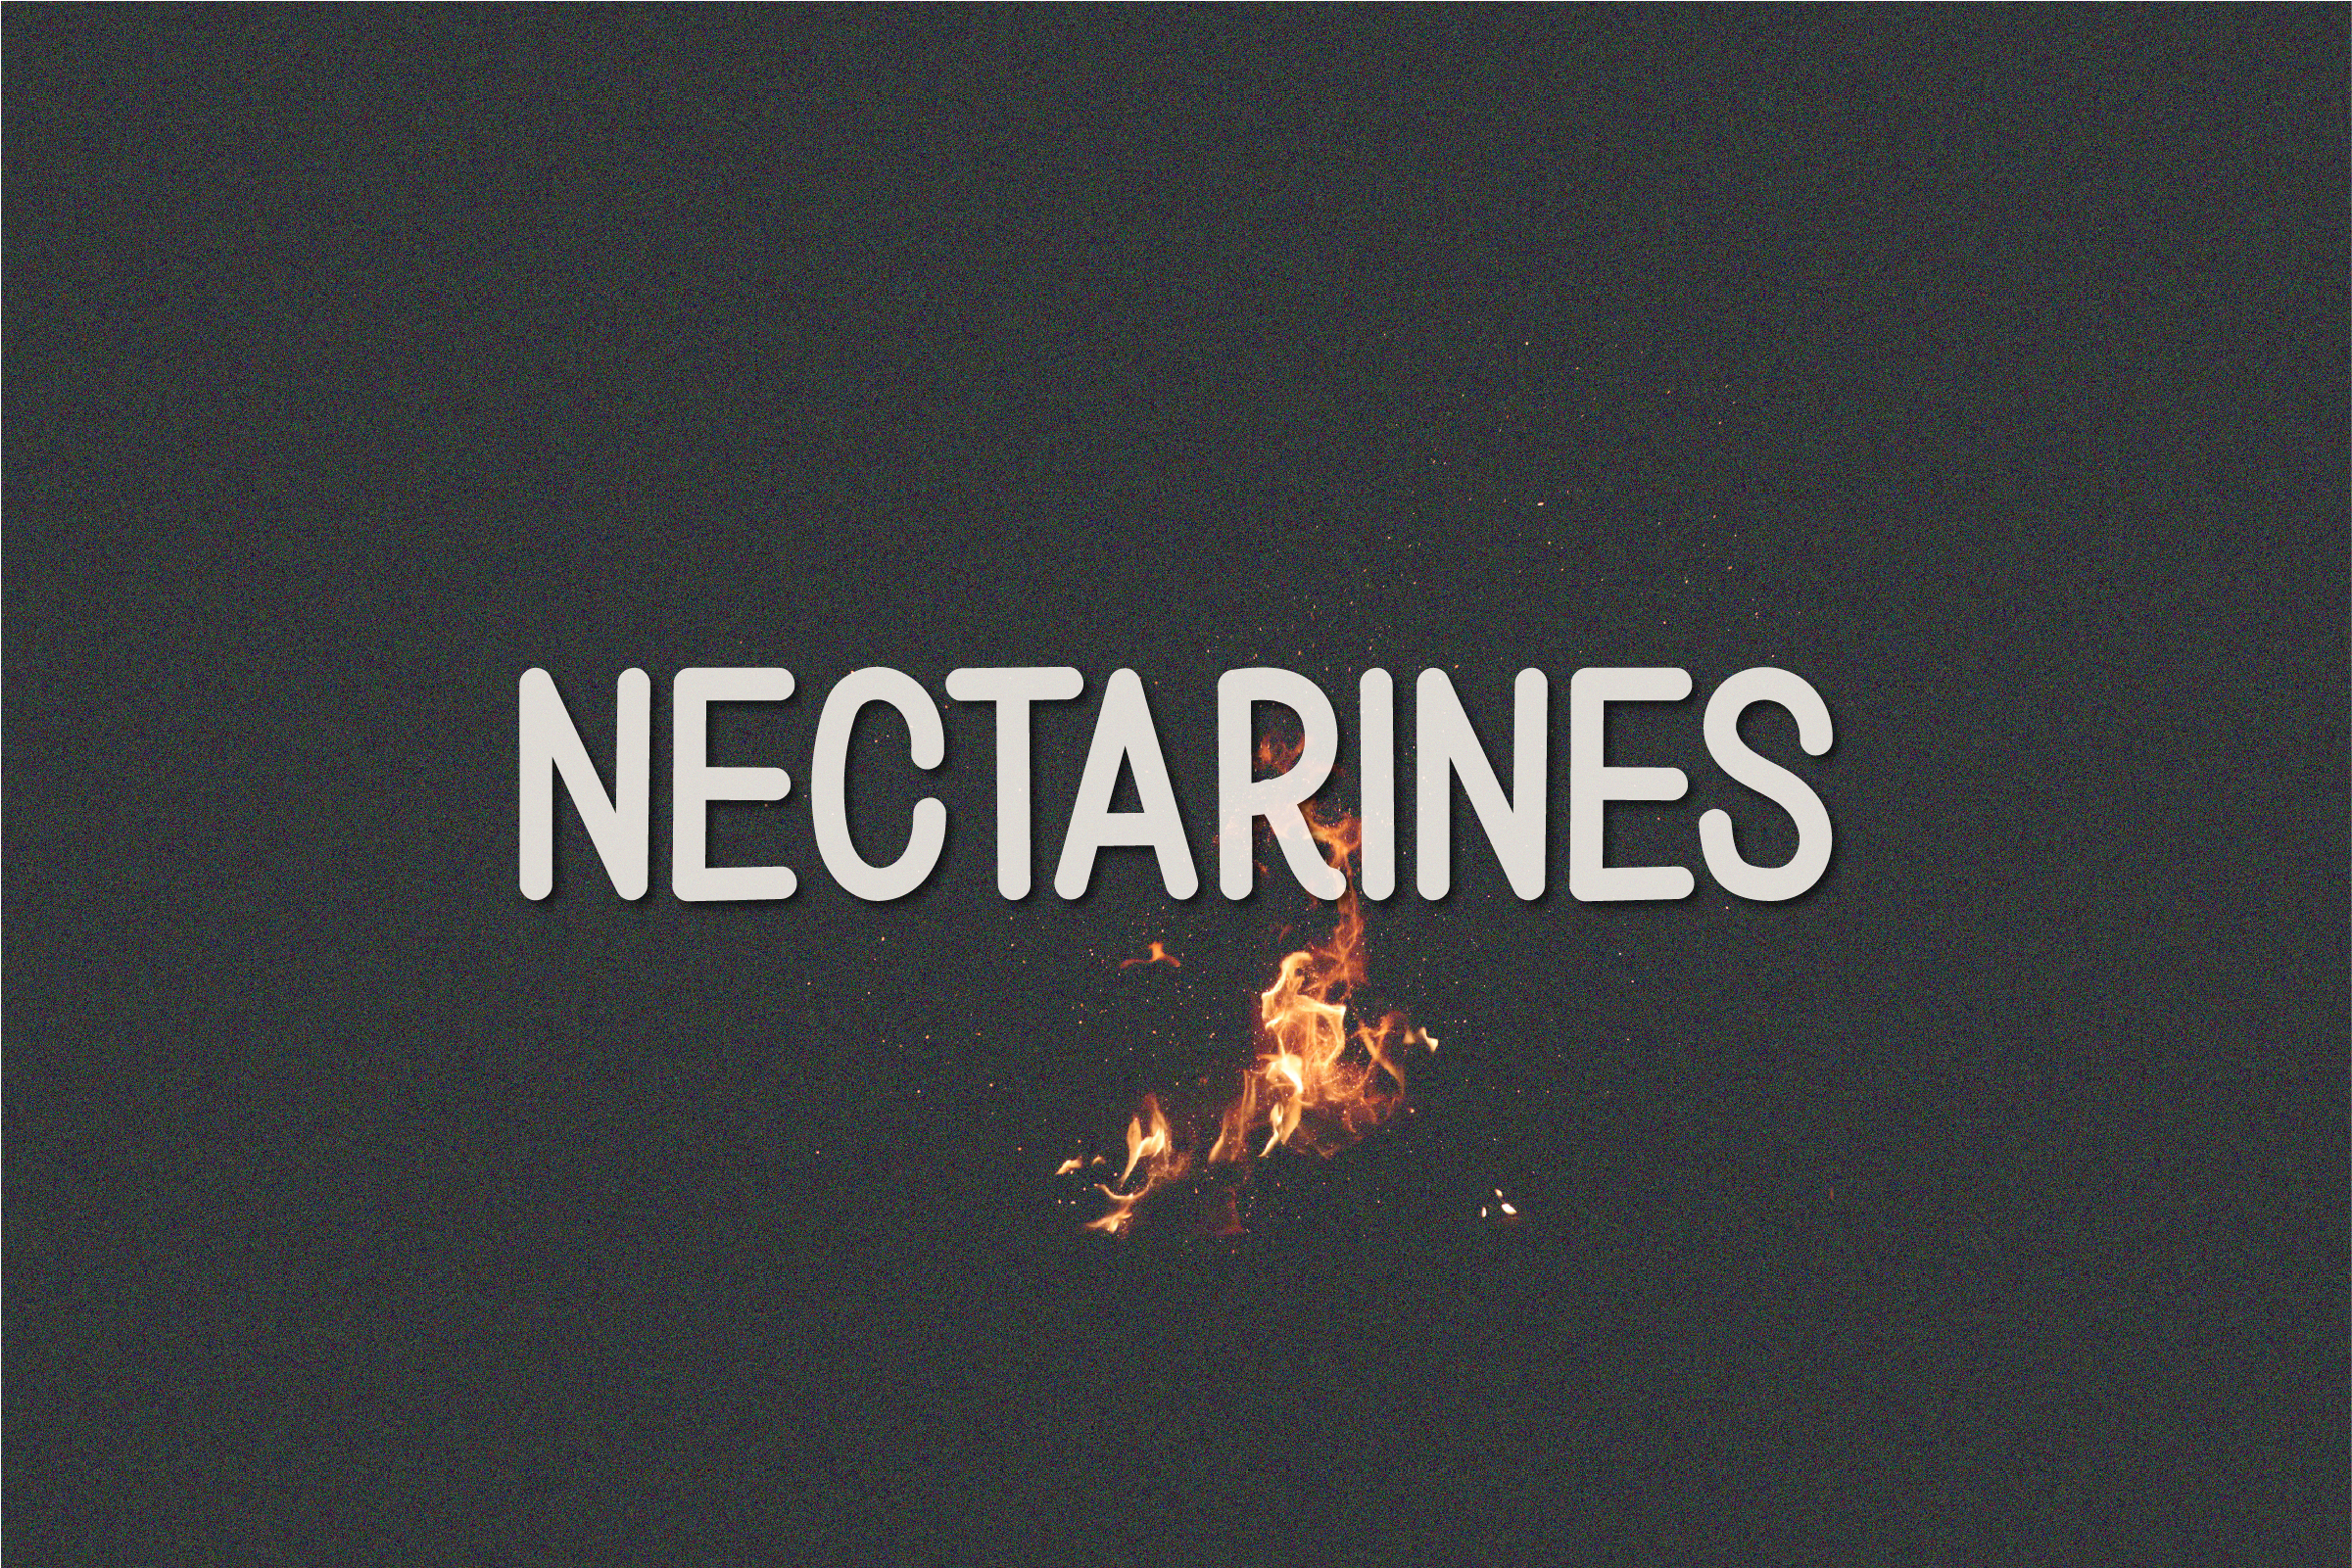 Nectarines